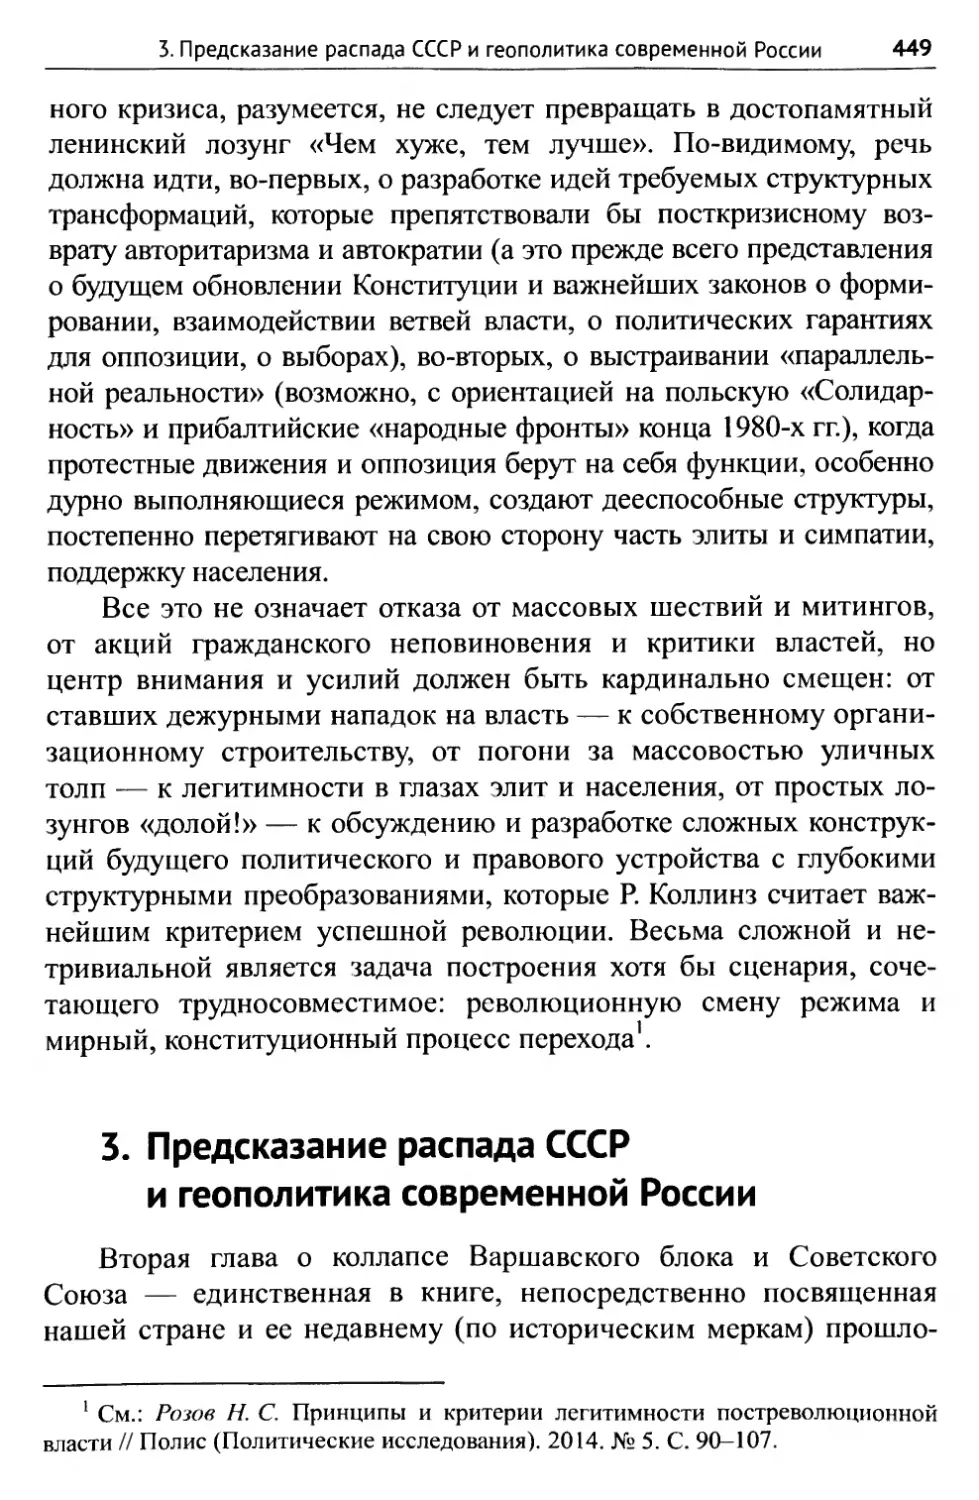 3. Предсказание распада СССР и геополитика современной России